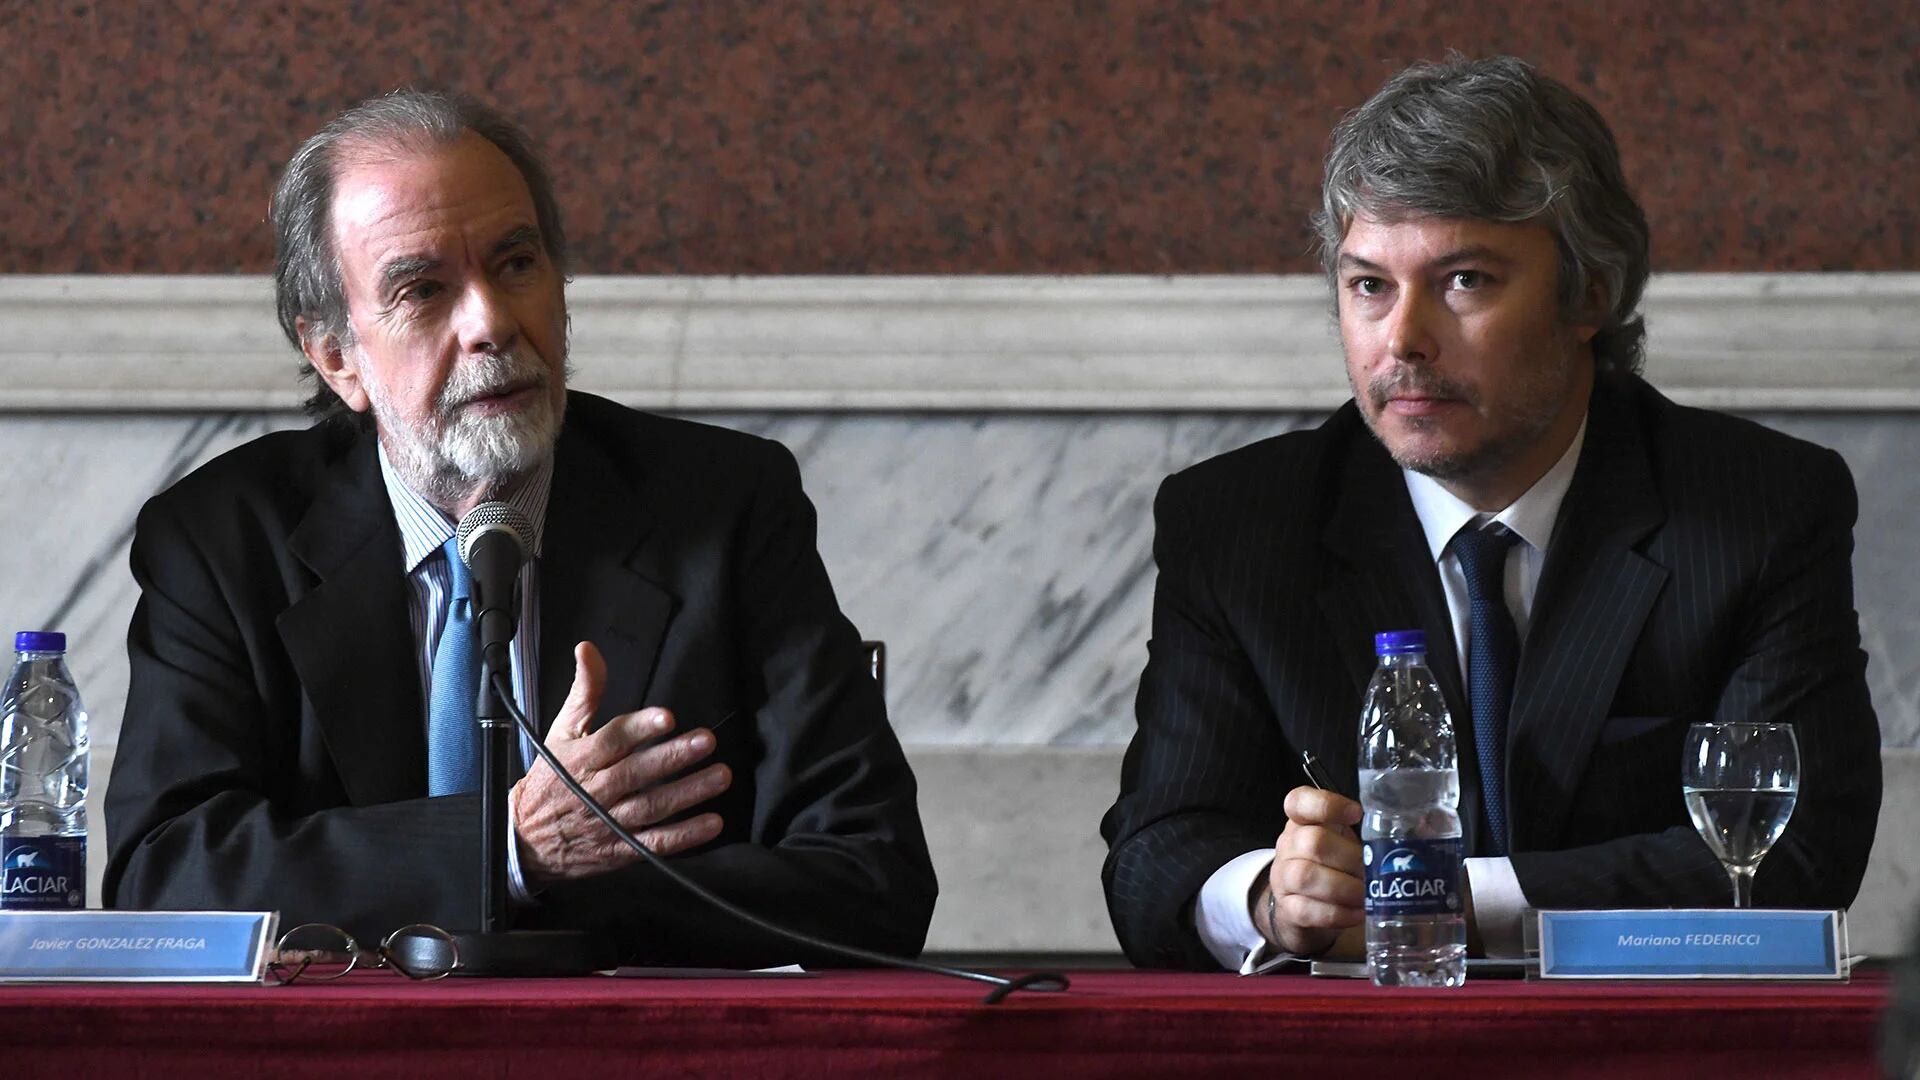 Javier González Fraga, presidente del Banco Nación Argentina, y Mariano Federici, presidente de la Unidad de Investigación Financiera  (Télam)